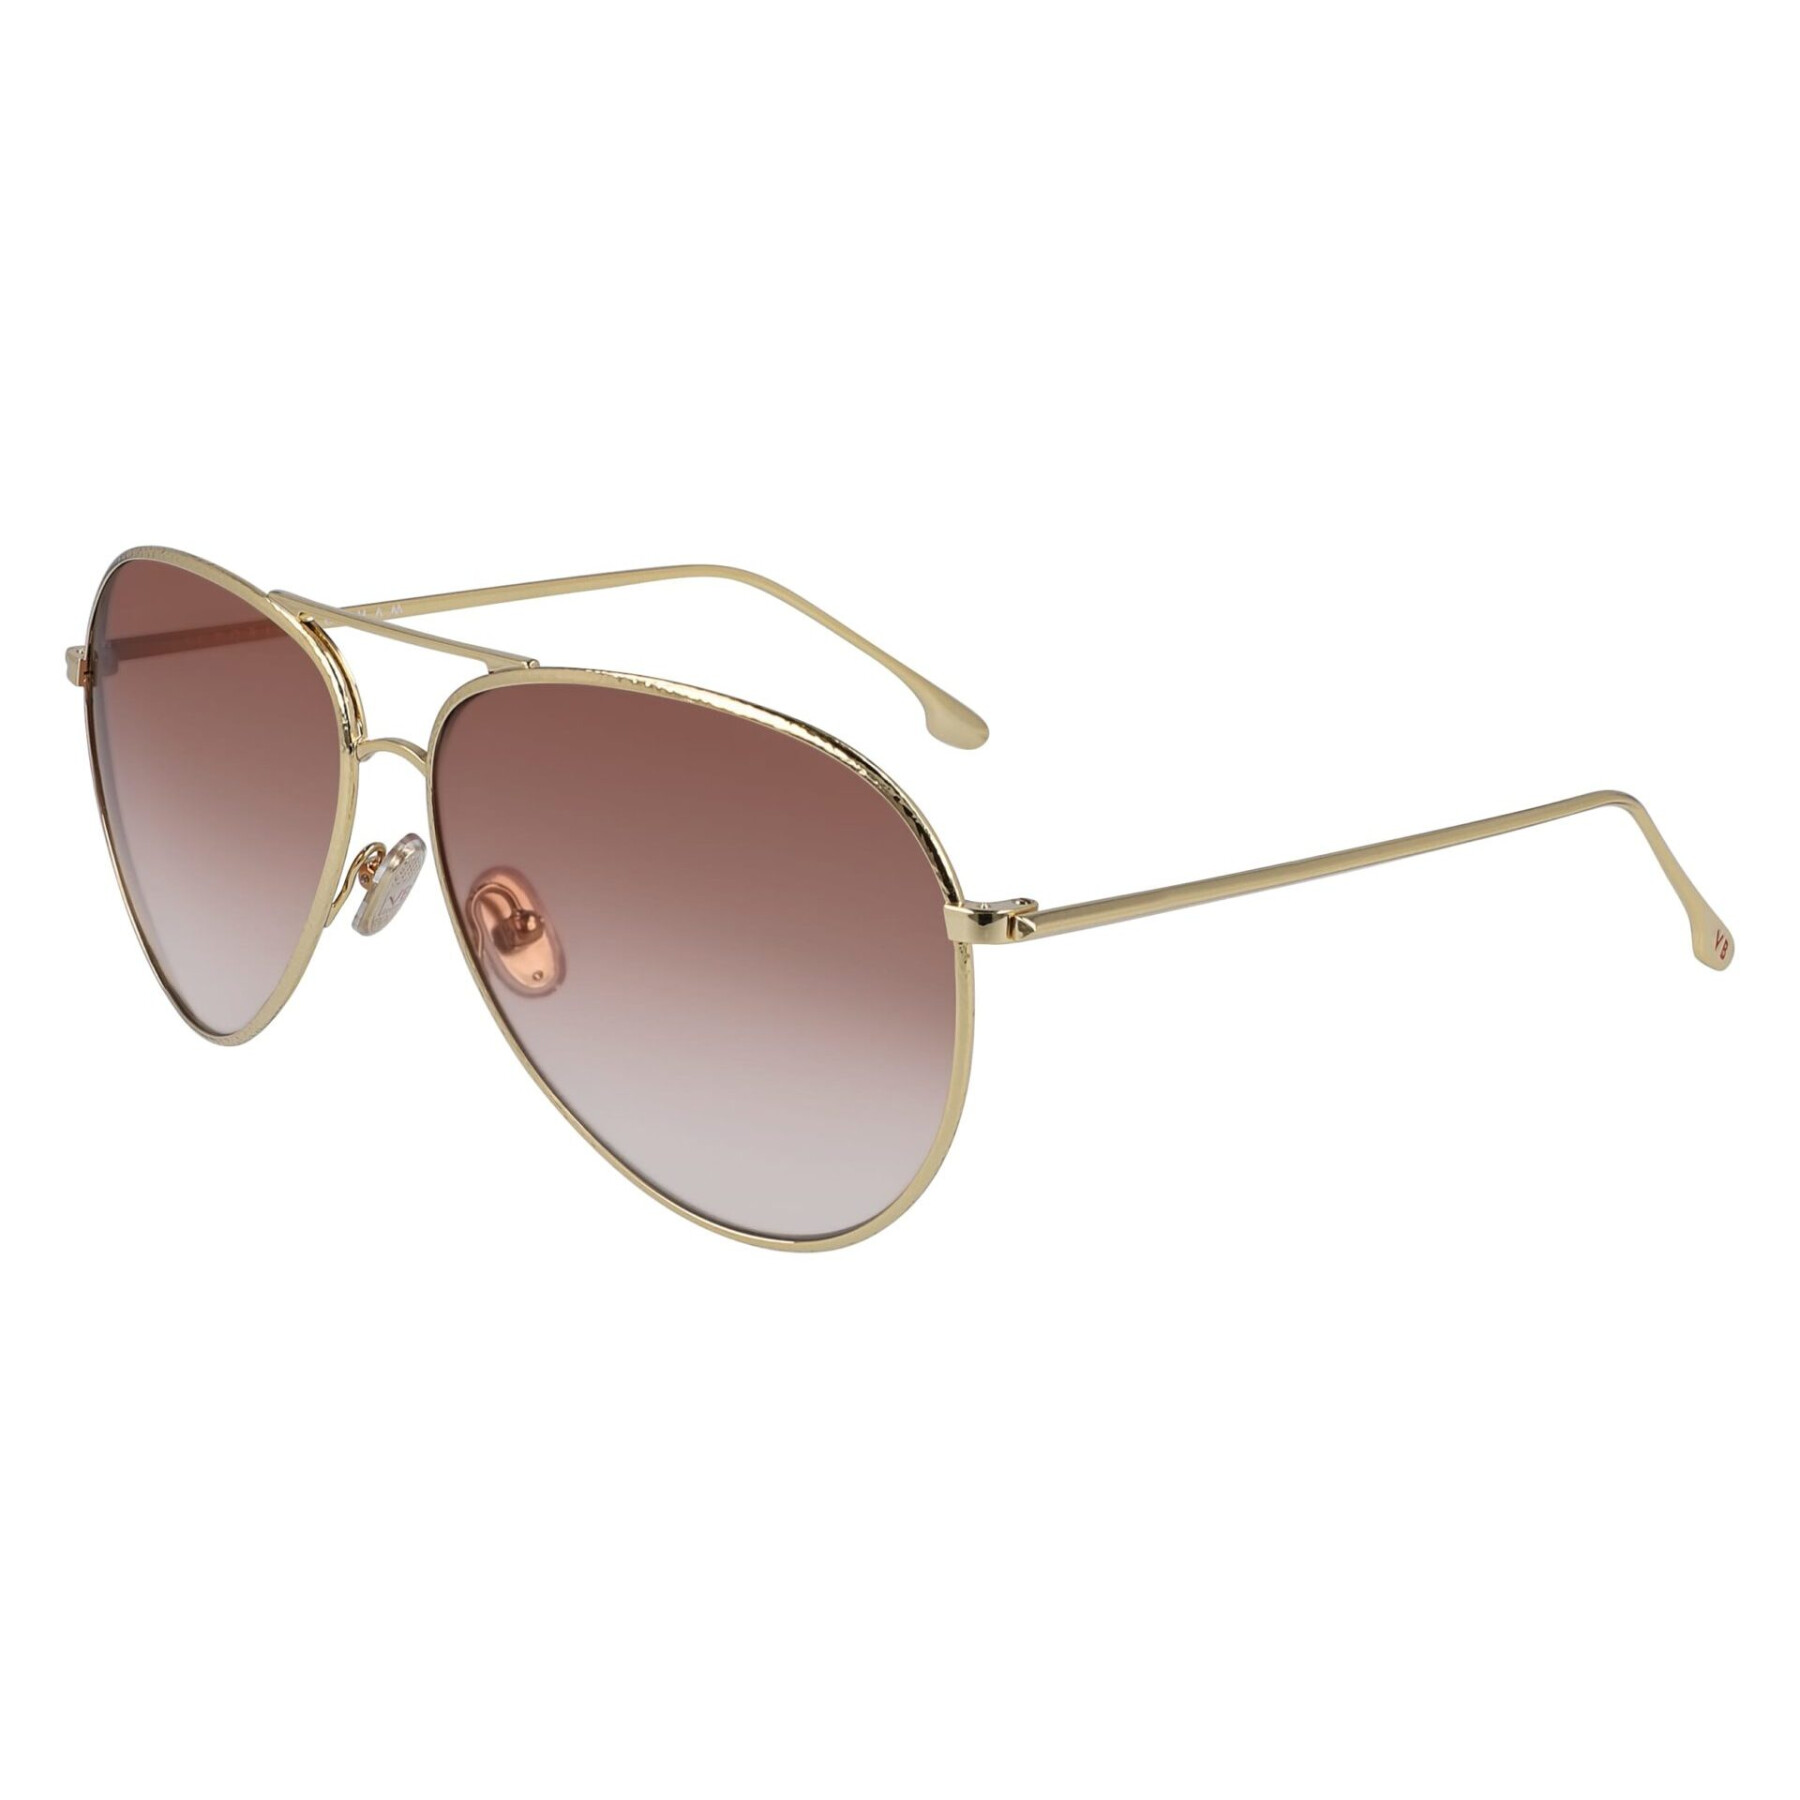 Women's sunglasses Victoria Beckham VB203S-712